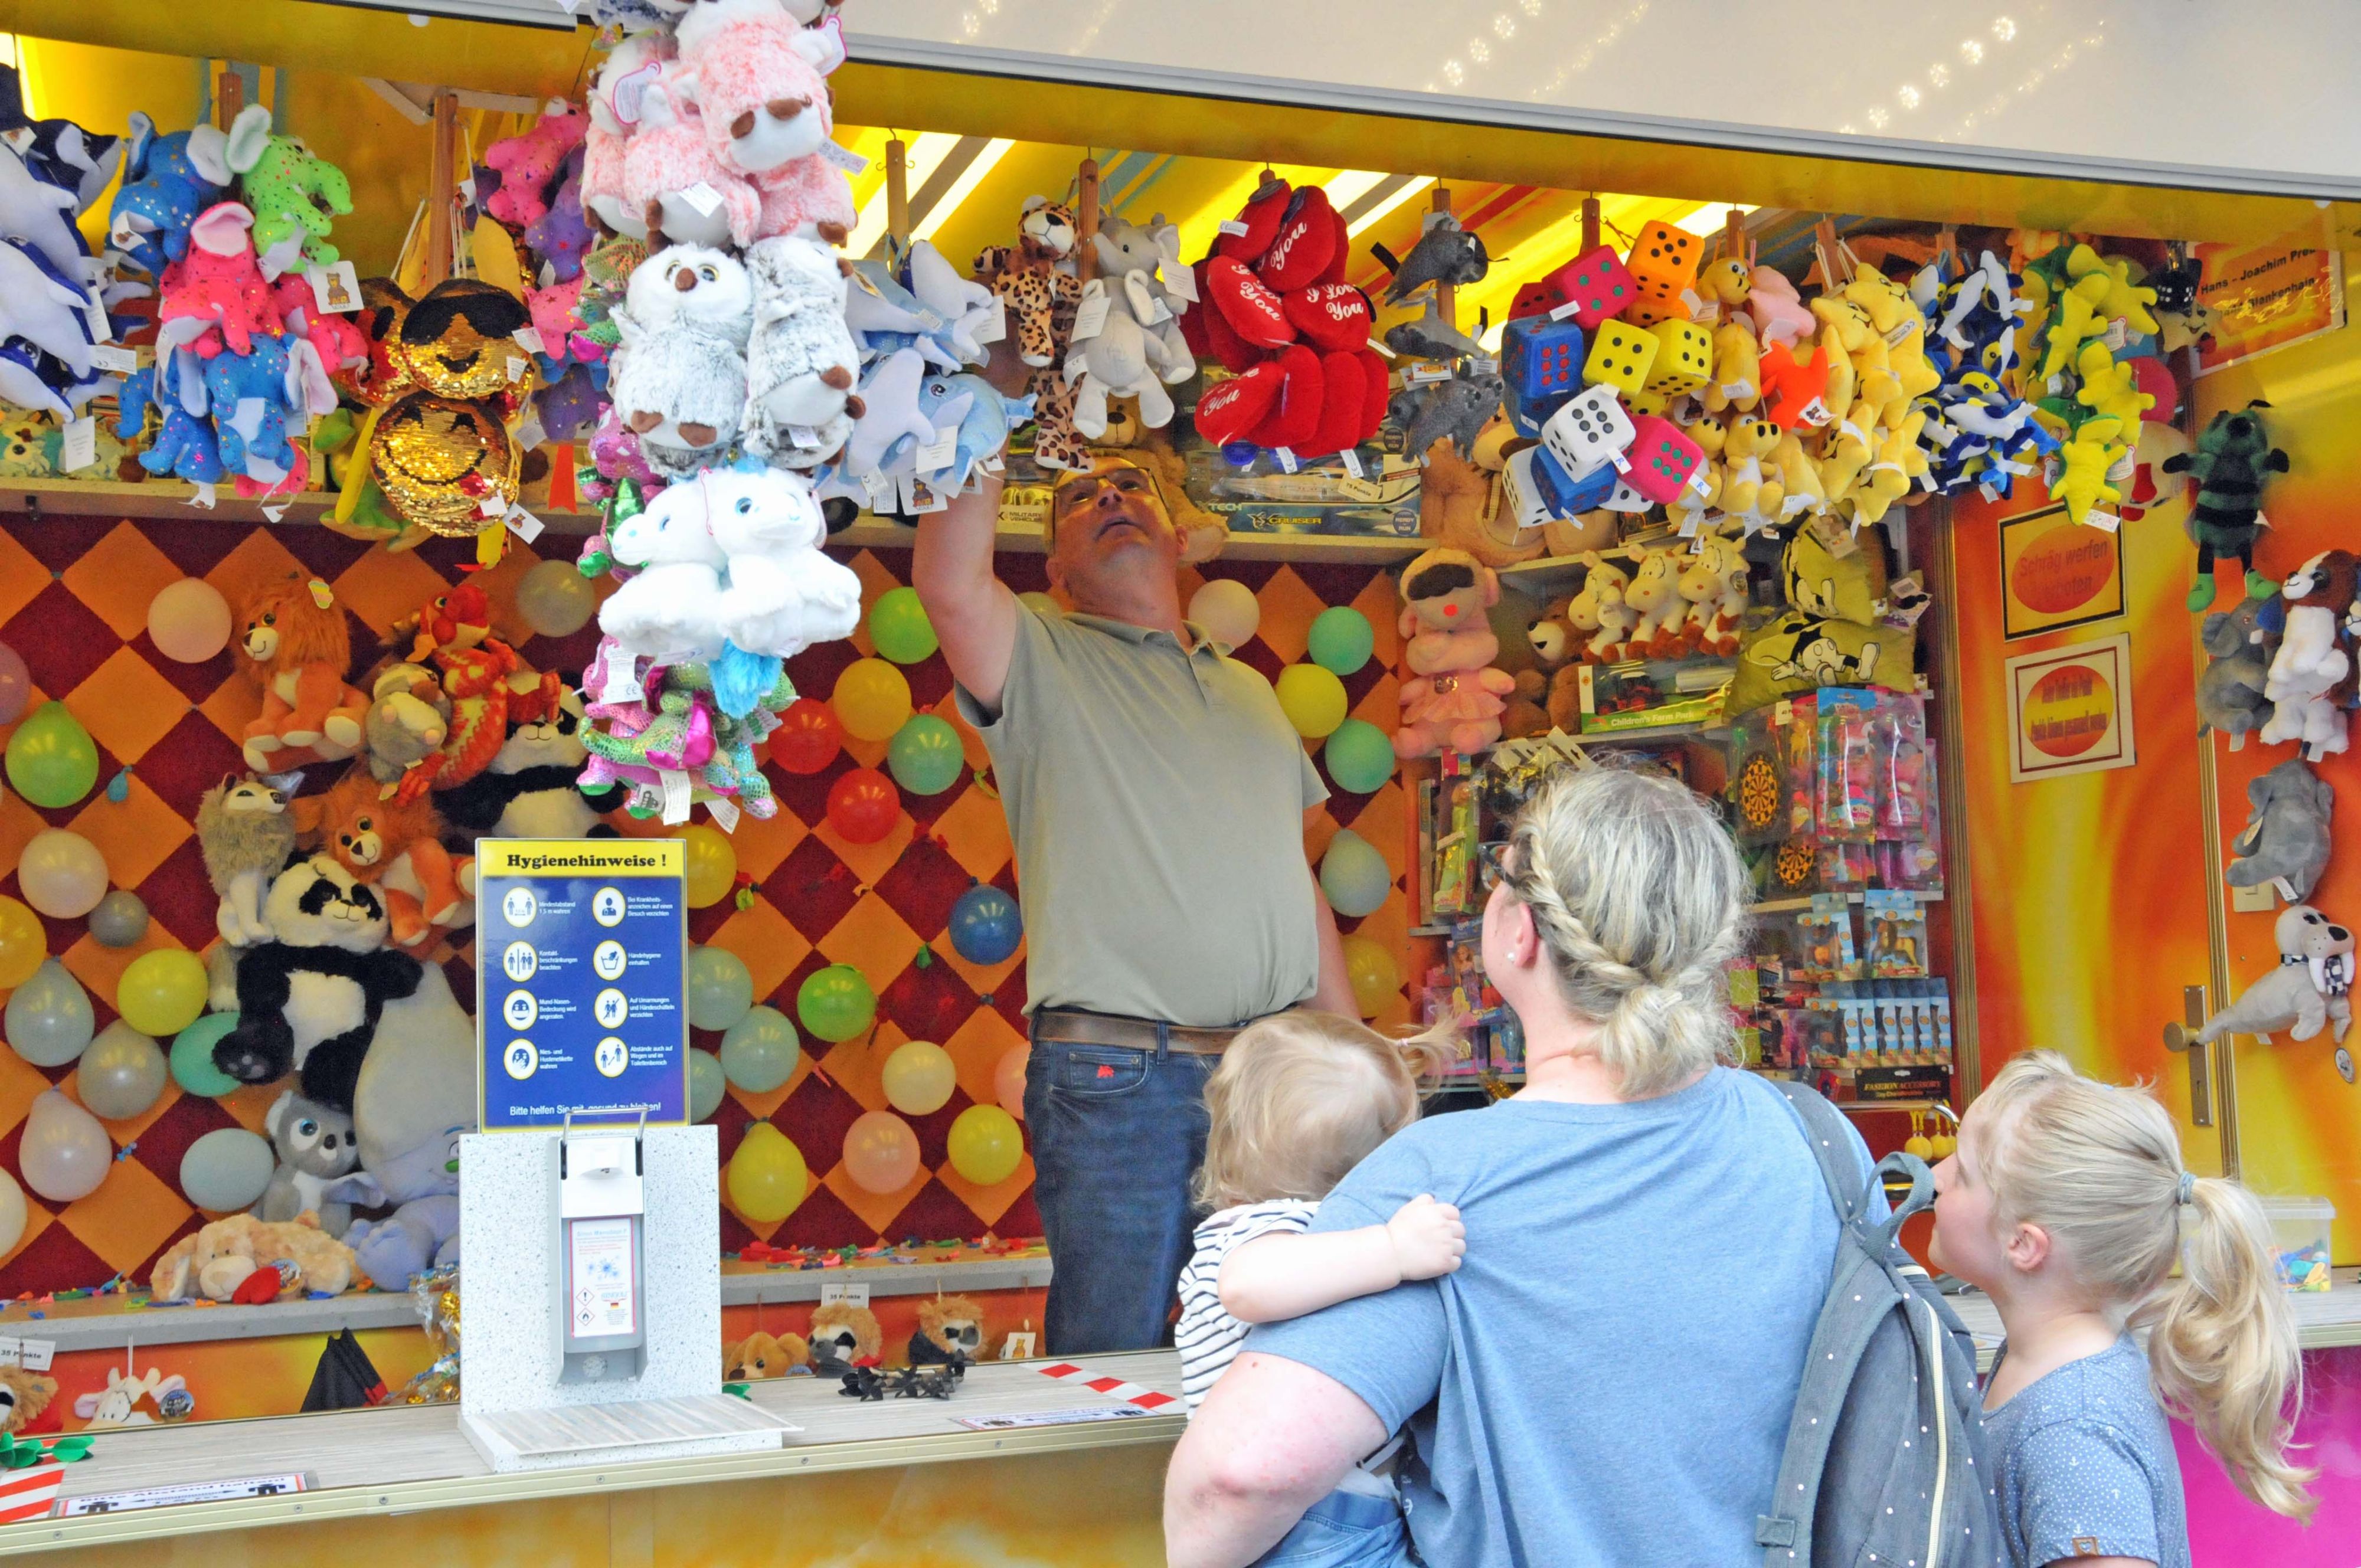 Ein farbenfroher Jahrmarktstand zum Pfeilewerfen. Von der Decke hängen viele Spielsachen.